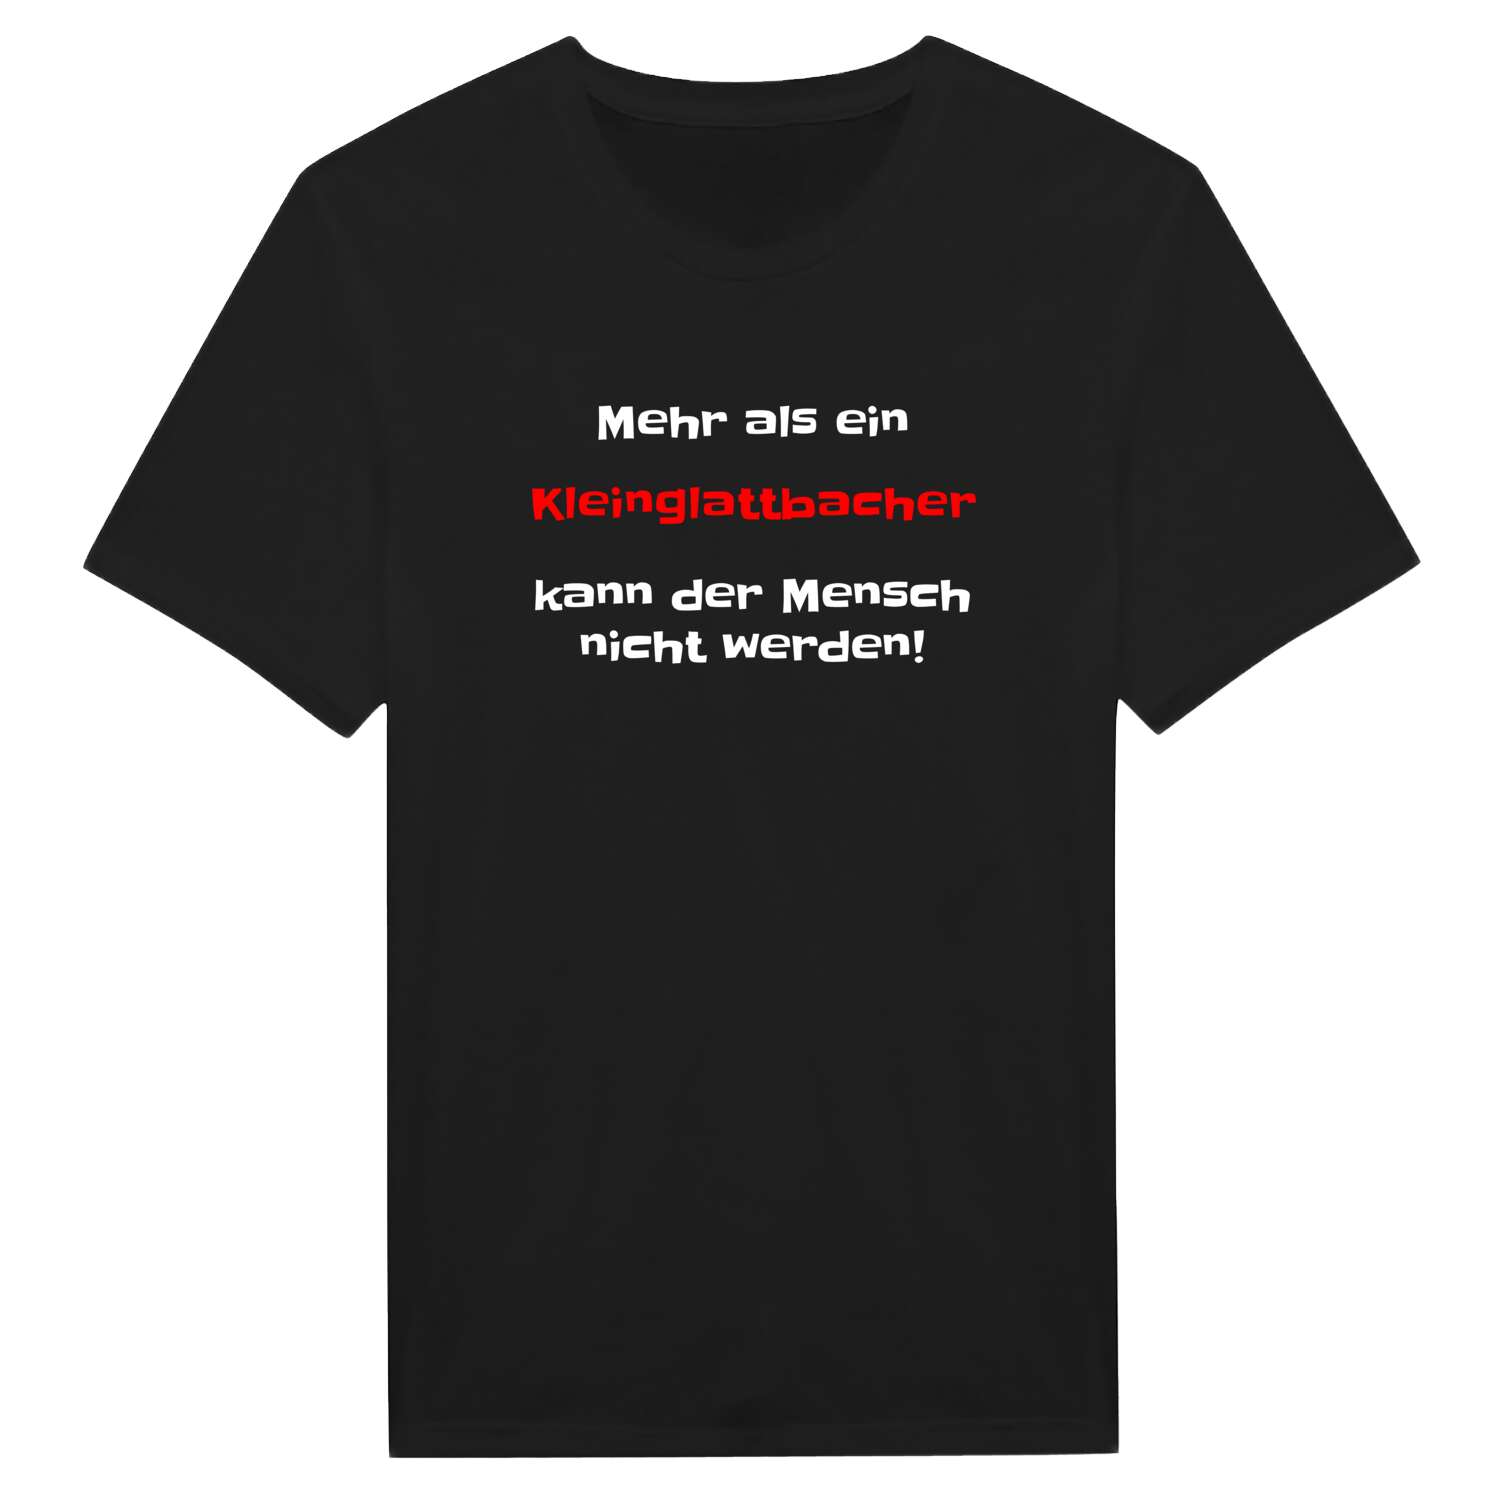 Kleinglattbach T-Shirt »Mehr als ein«